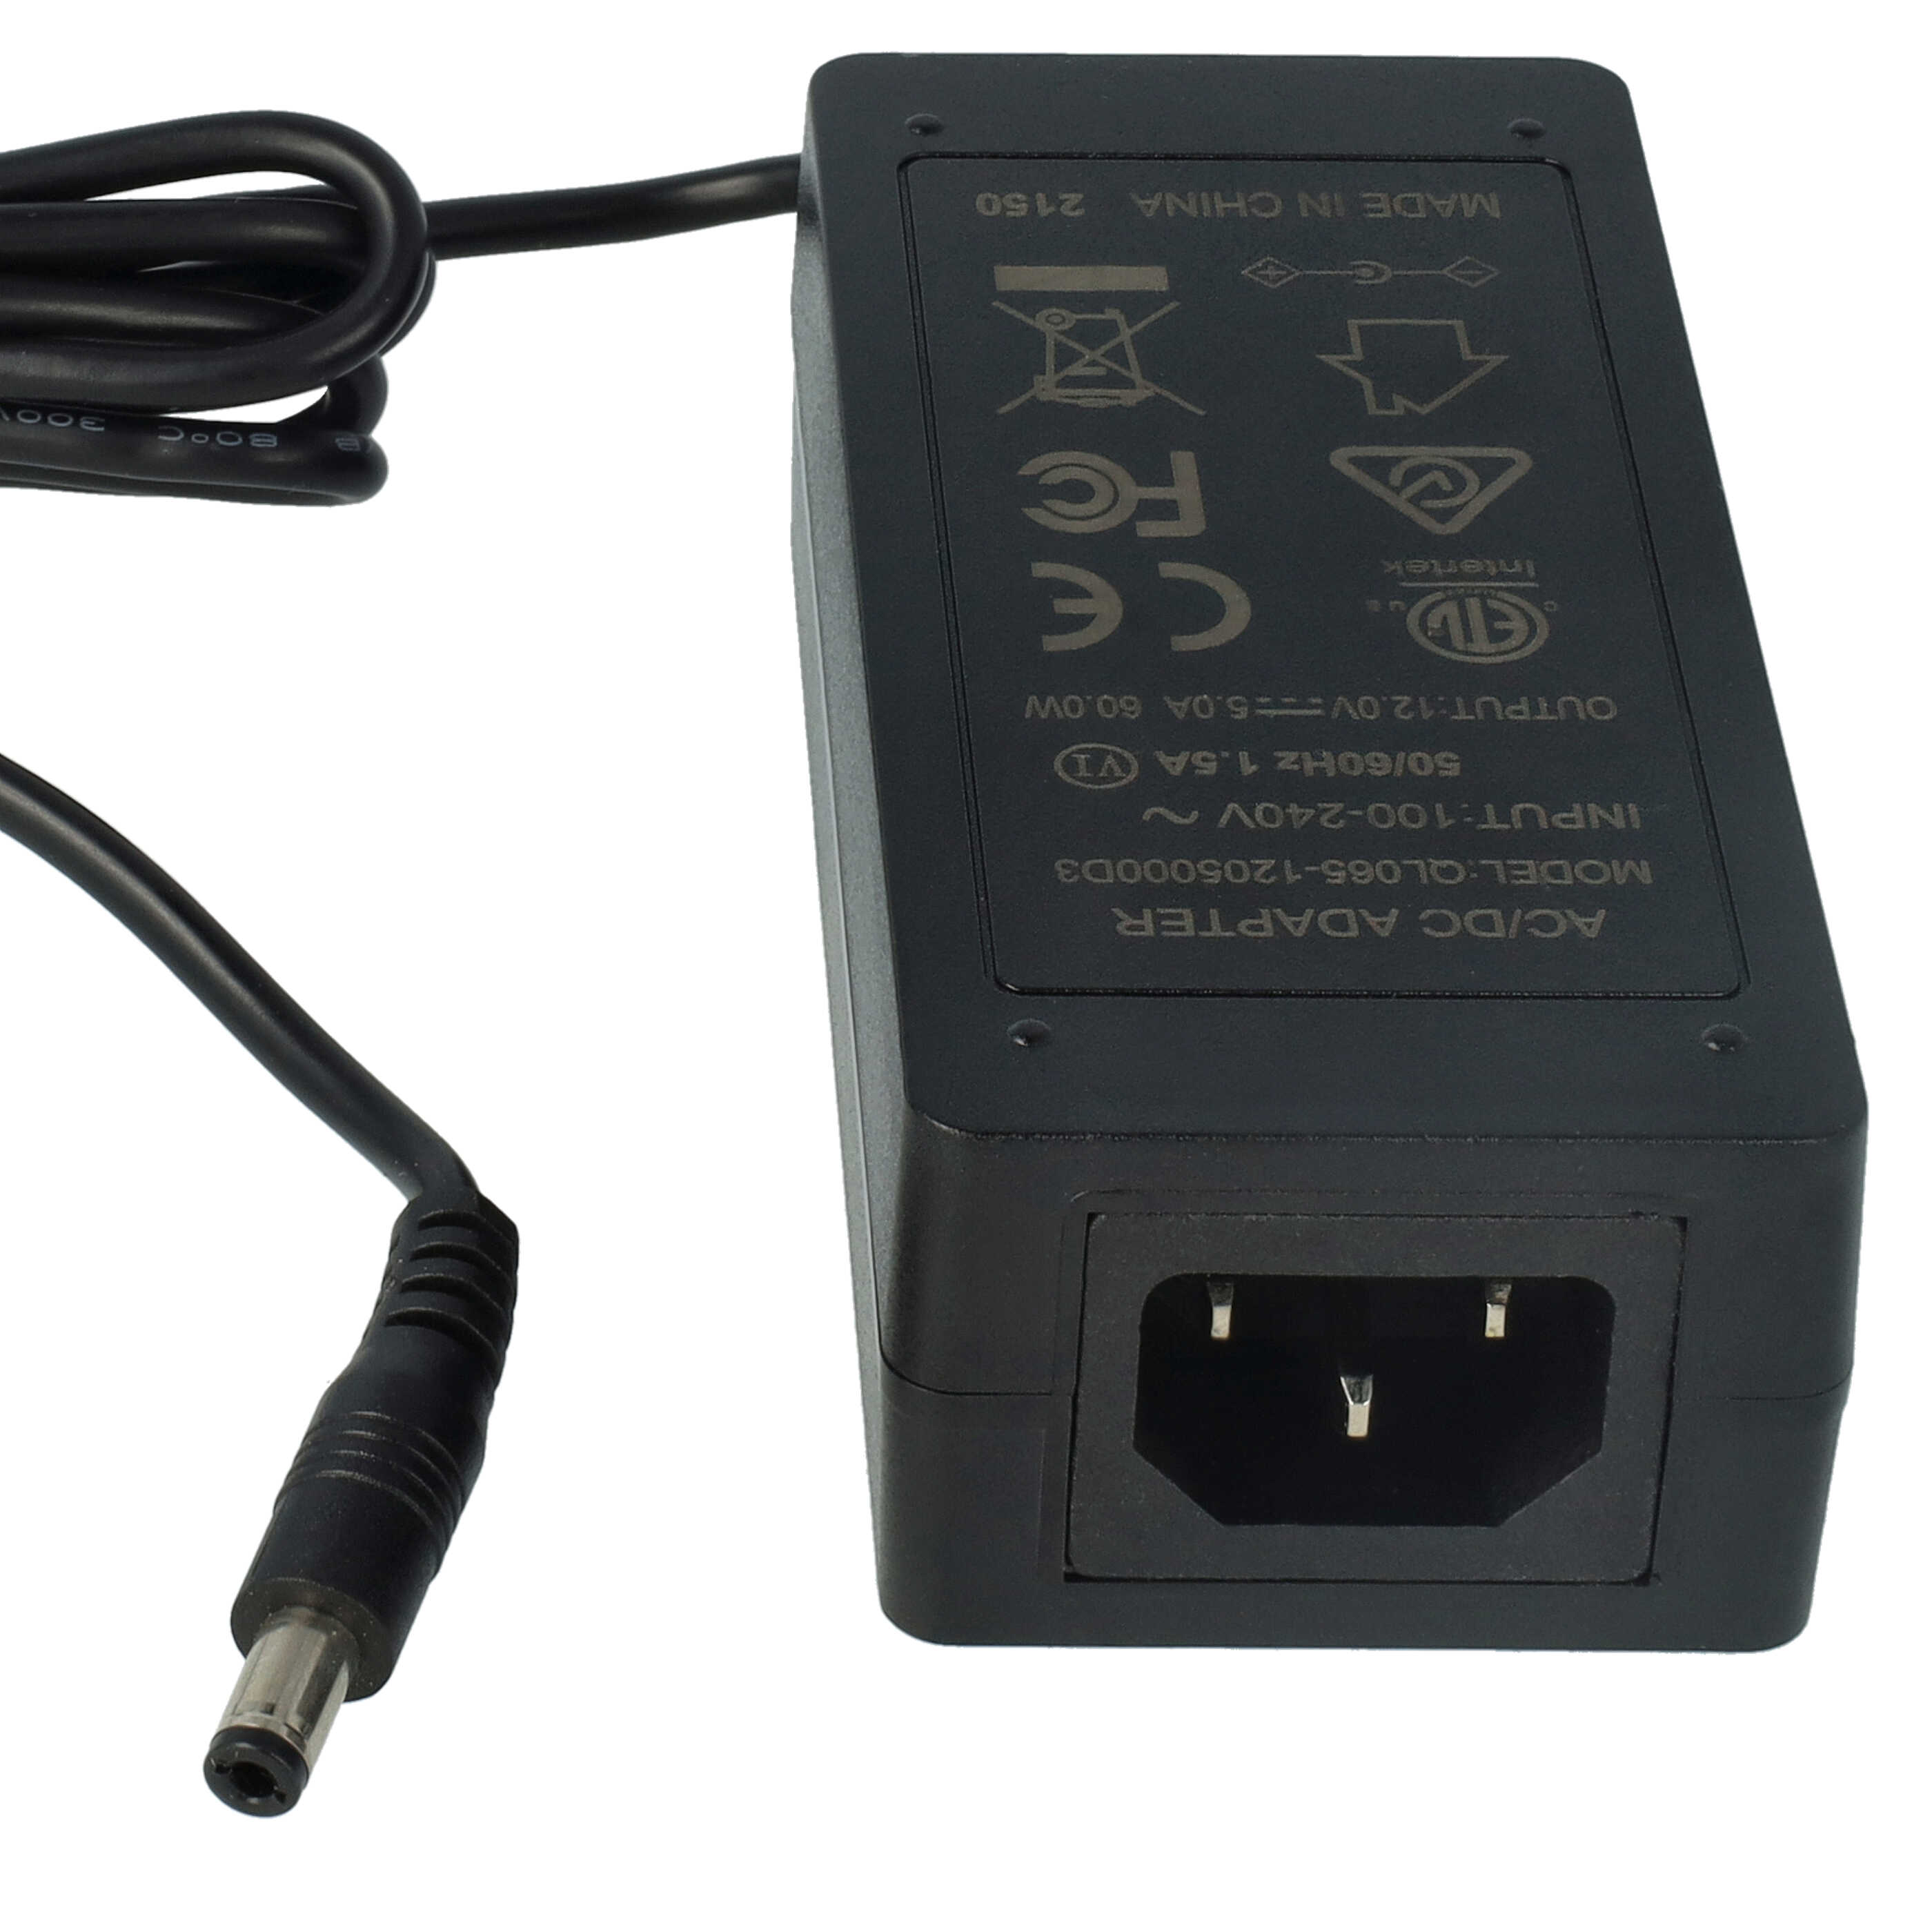 Chargeur + cordon pour batterie de radio Motorola HNN9013 - 7,2 V, 0,5 A